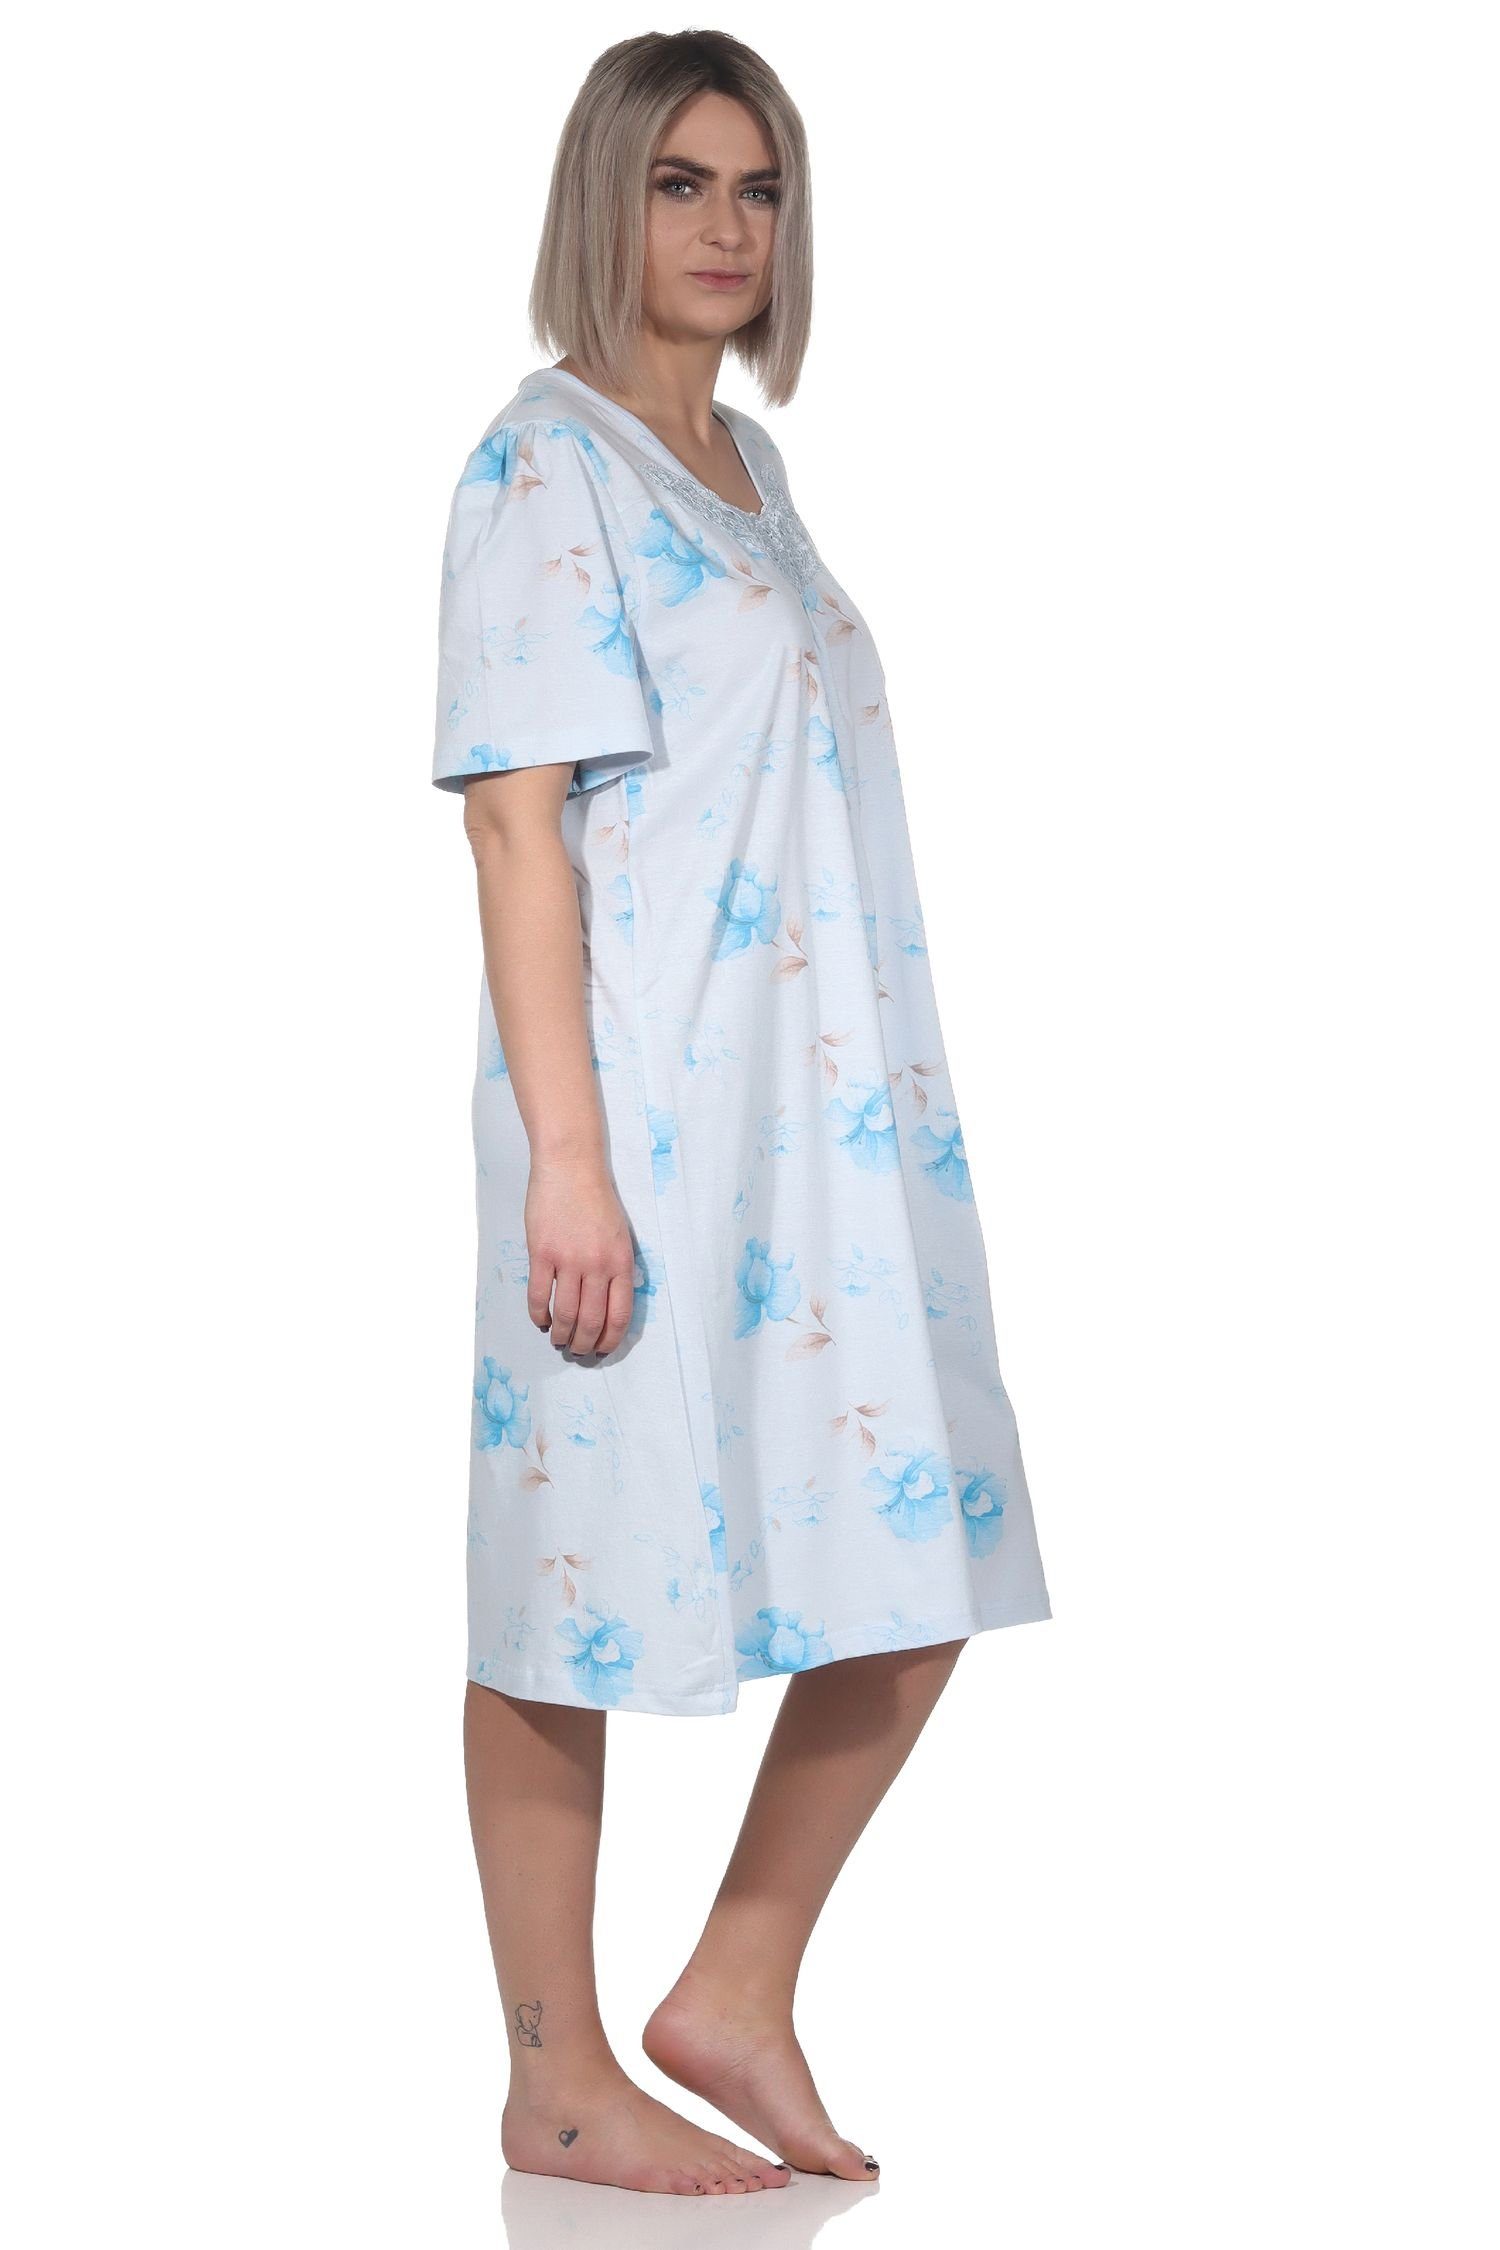 Nachthemd Normann am mit Knopfleiste kurzarm hellblau Damen Nachthemd und Hals Frauliches Spitze